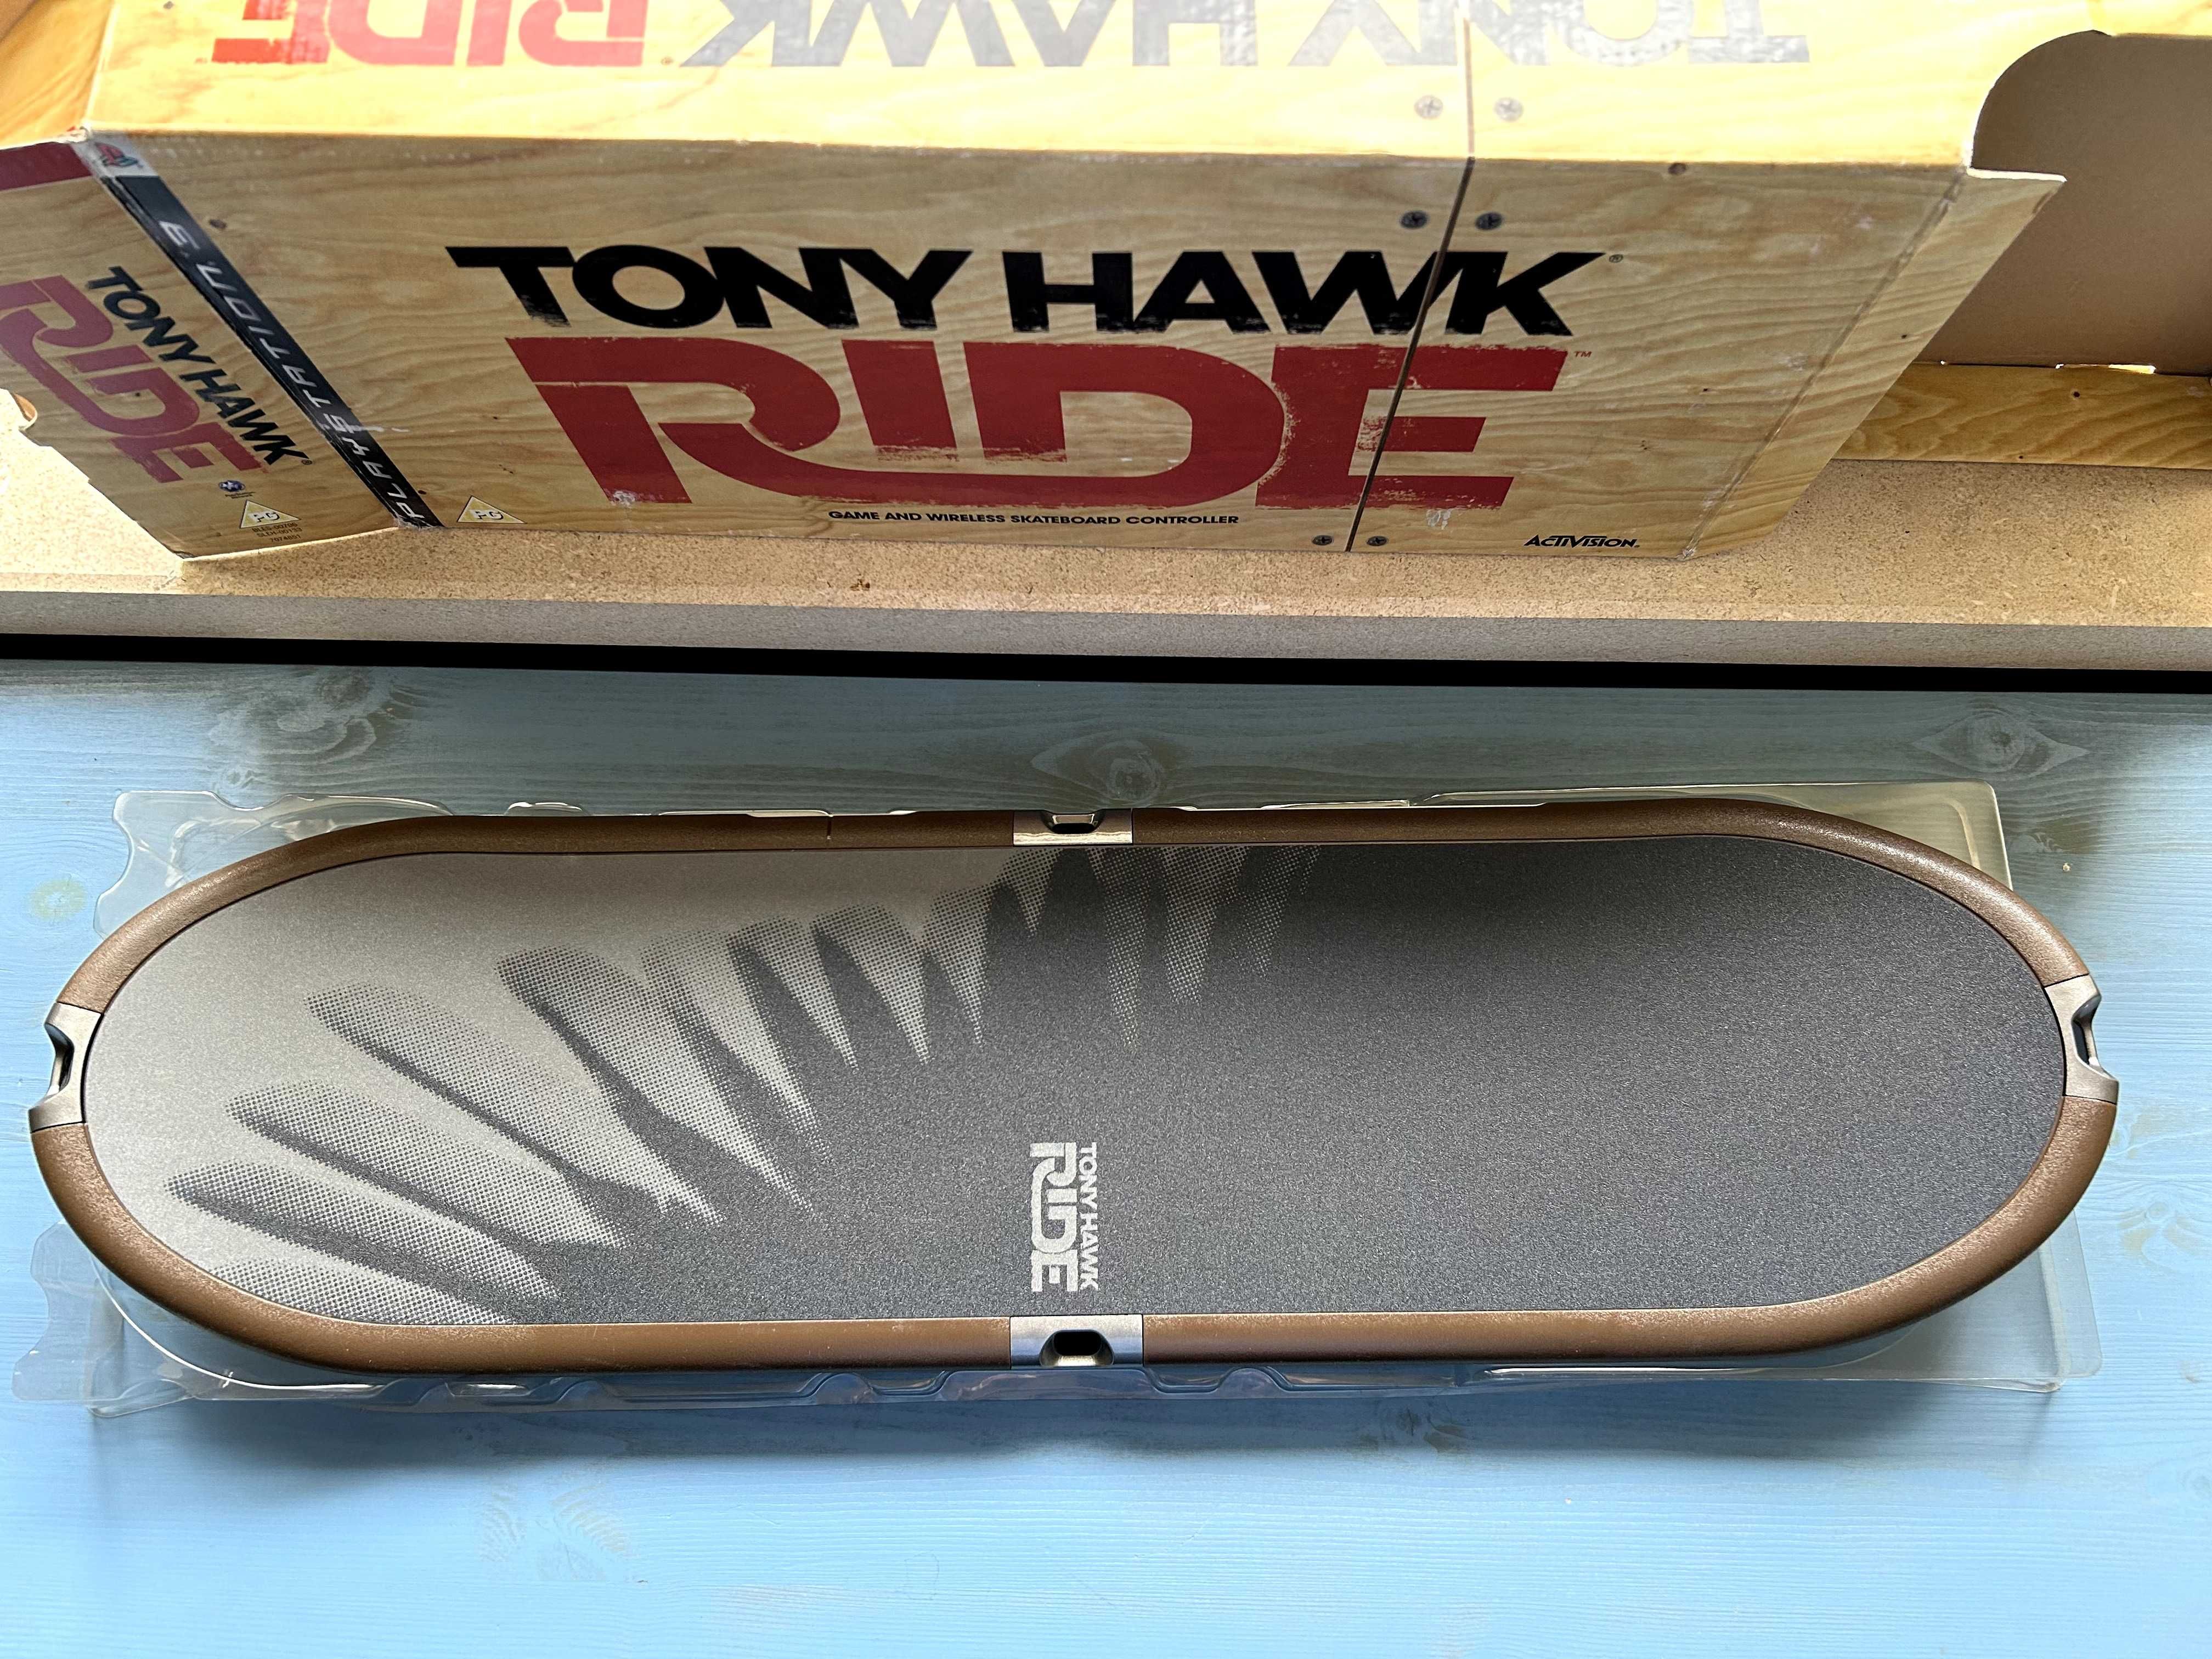 Skateboard Tony Hawk Ride PS3